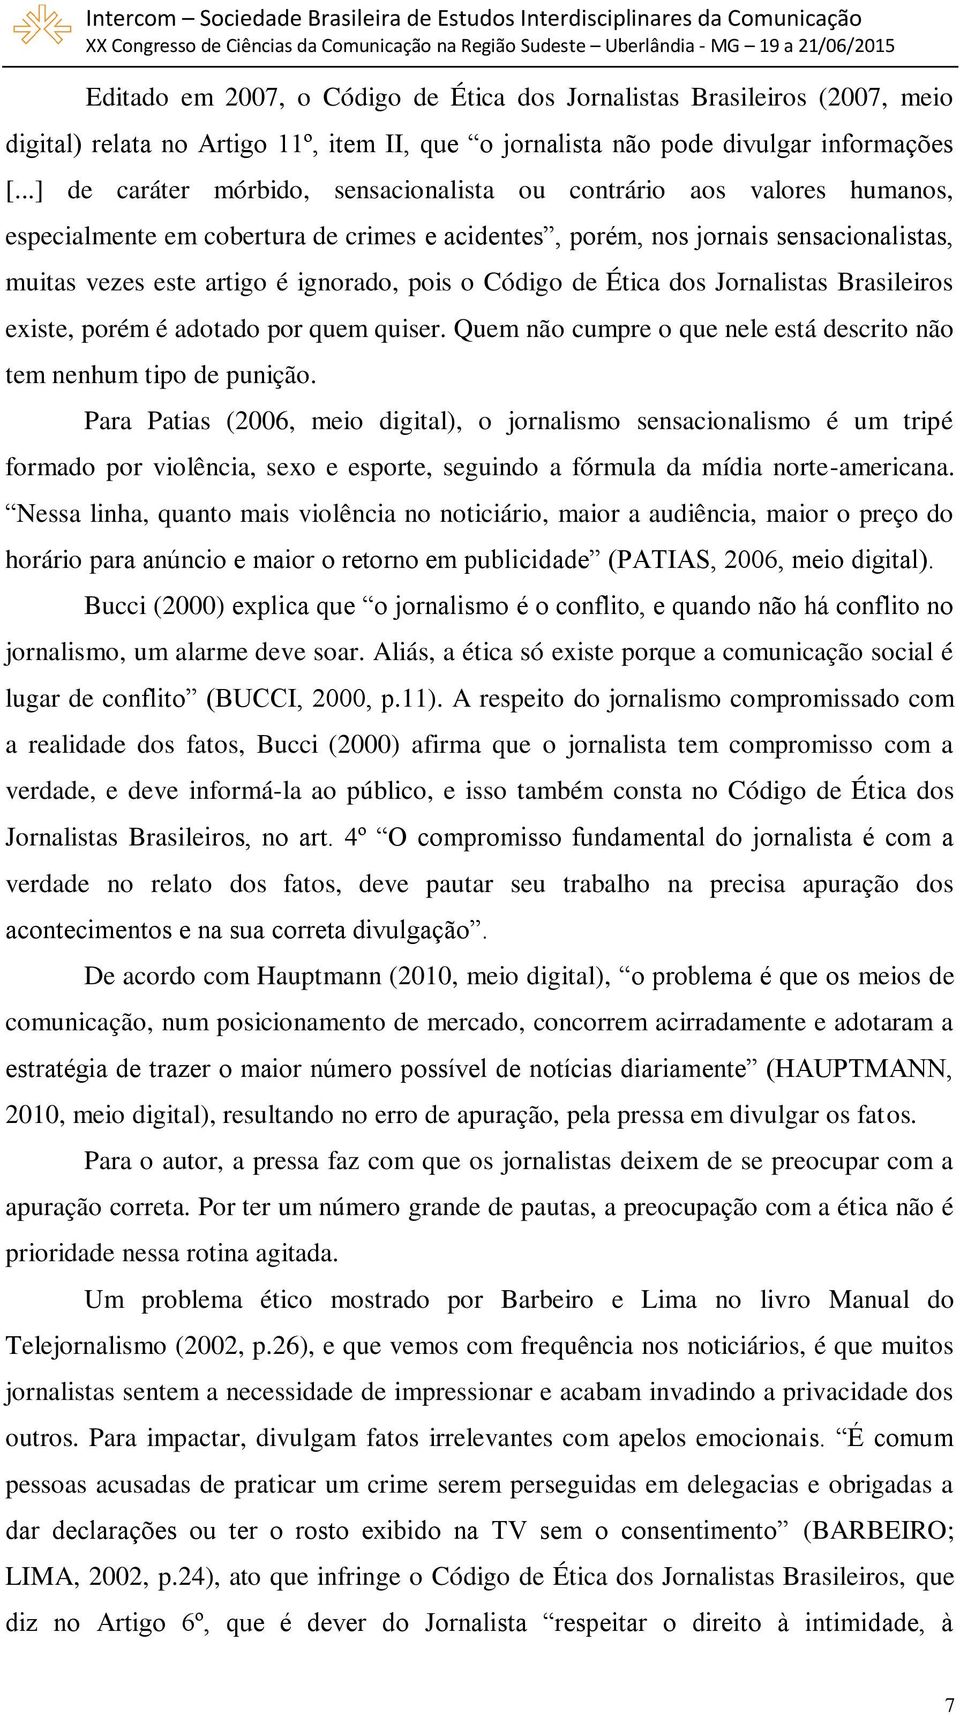 pois o Código de Ética dos Jornalistas Brasileiros existe, porém é adotado por quem quiser. Quem não cumpre o que nele está descrito não tem nenhum tipo de punição.